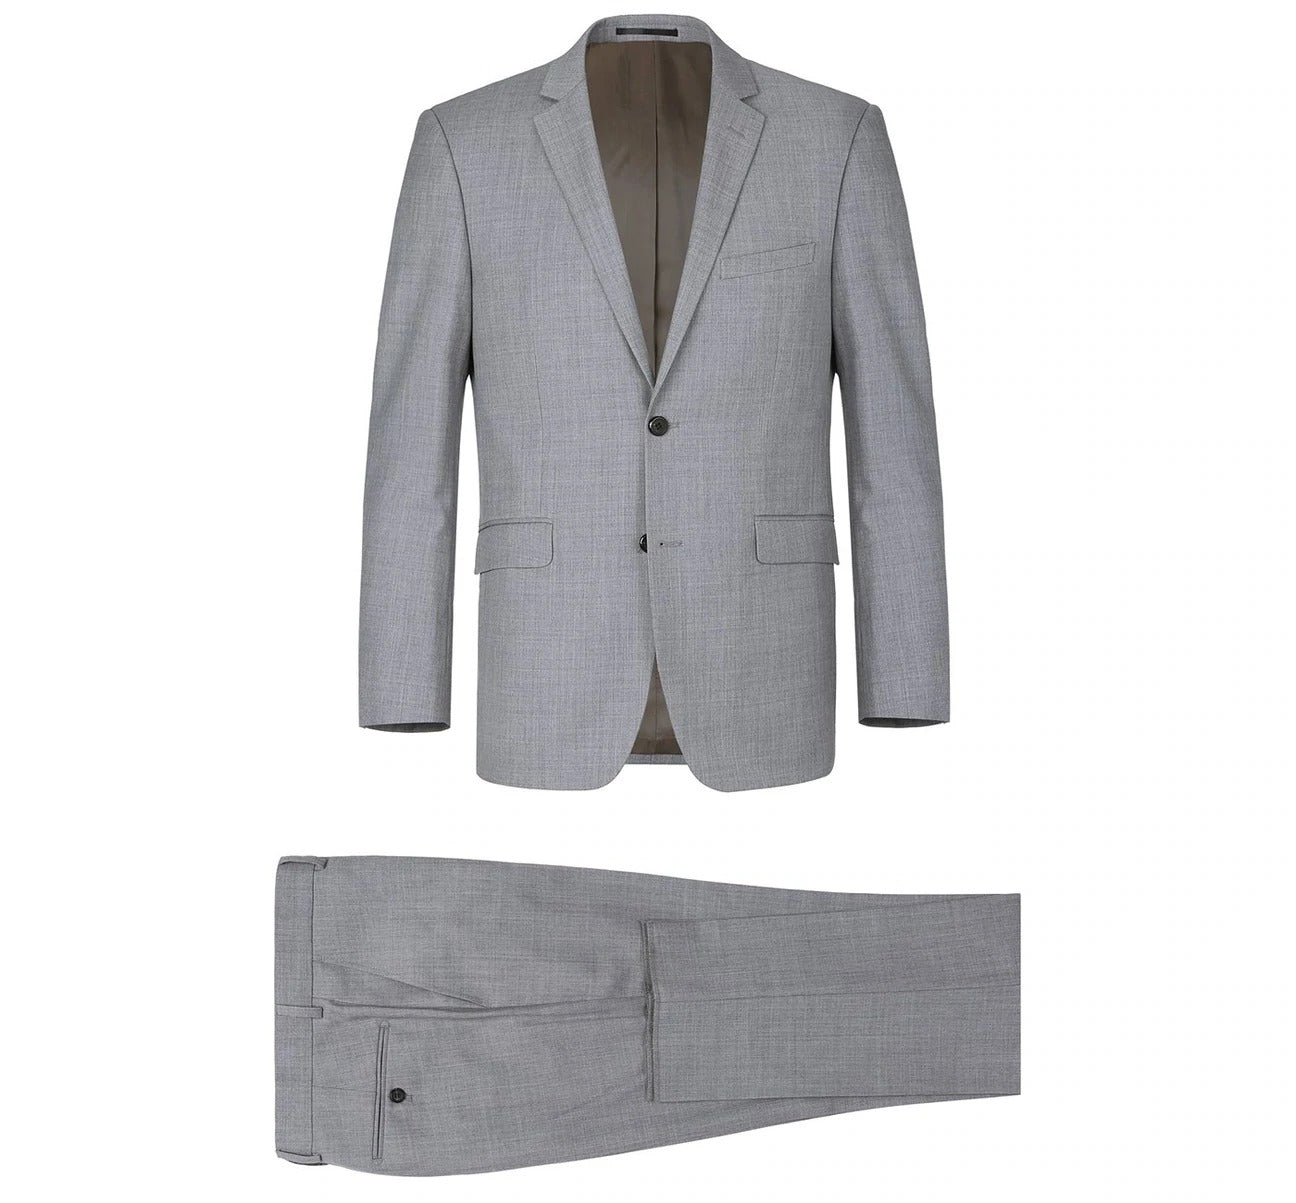 RENOIR Grey 2-Piece Classic Fit Notch Lapel Wool Suit 508-5